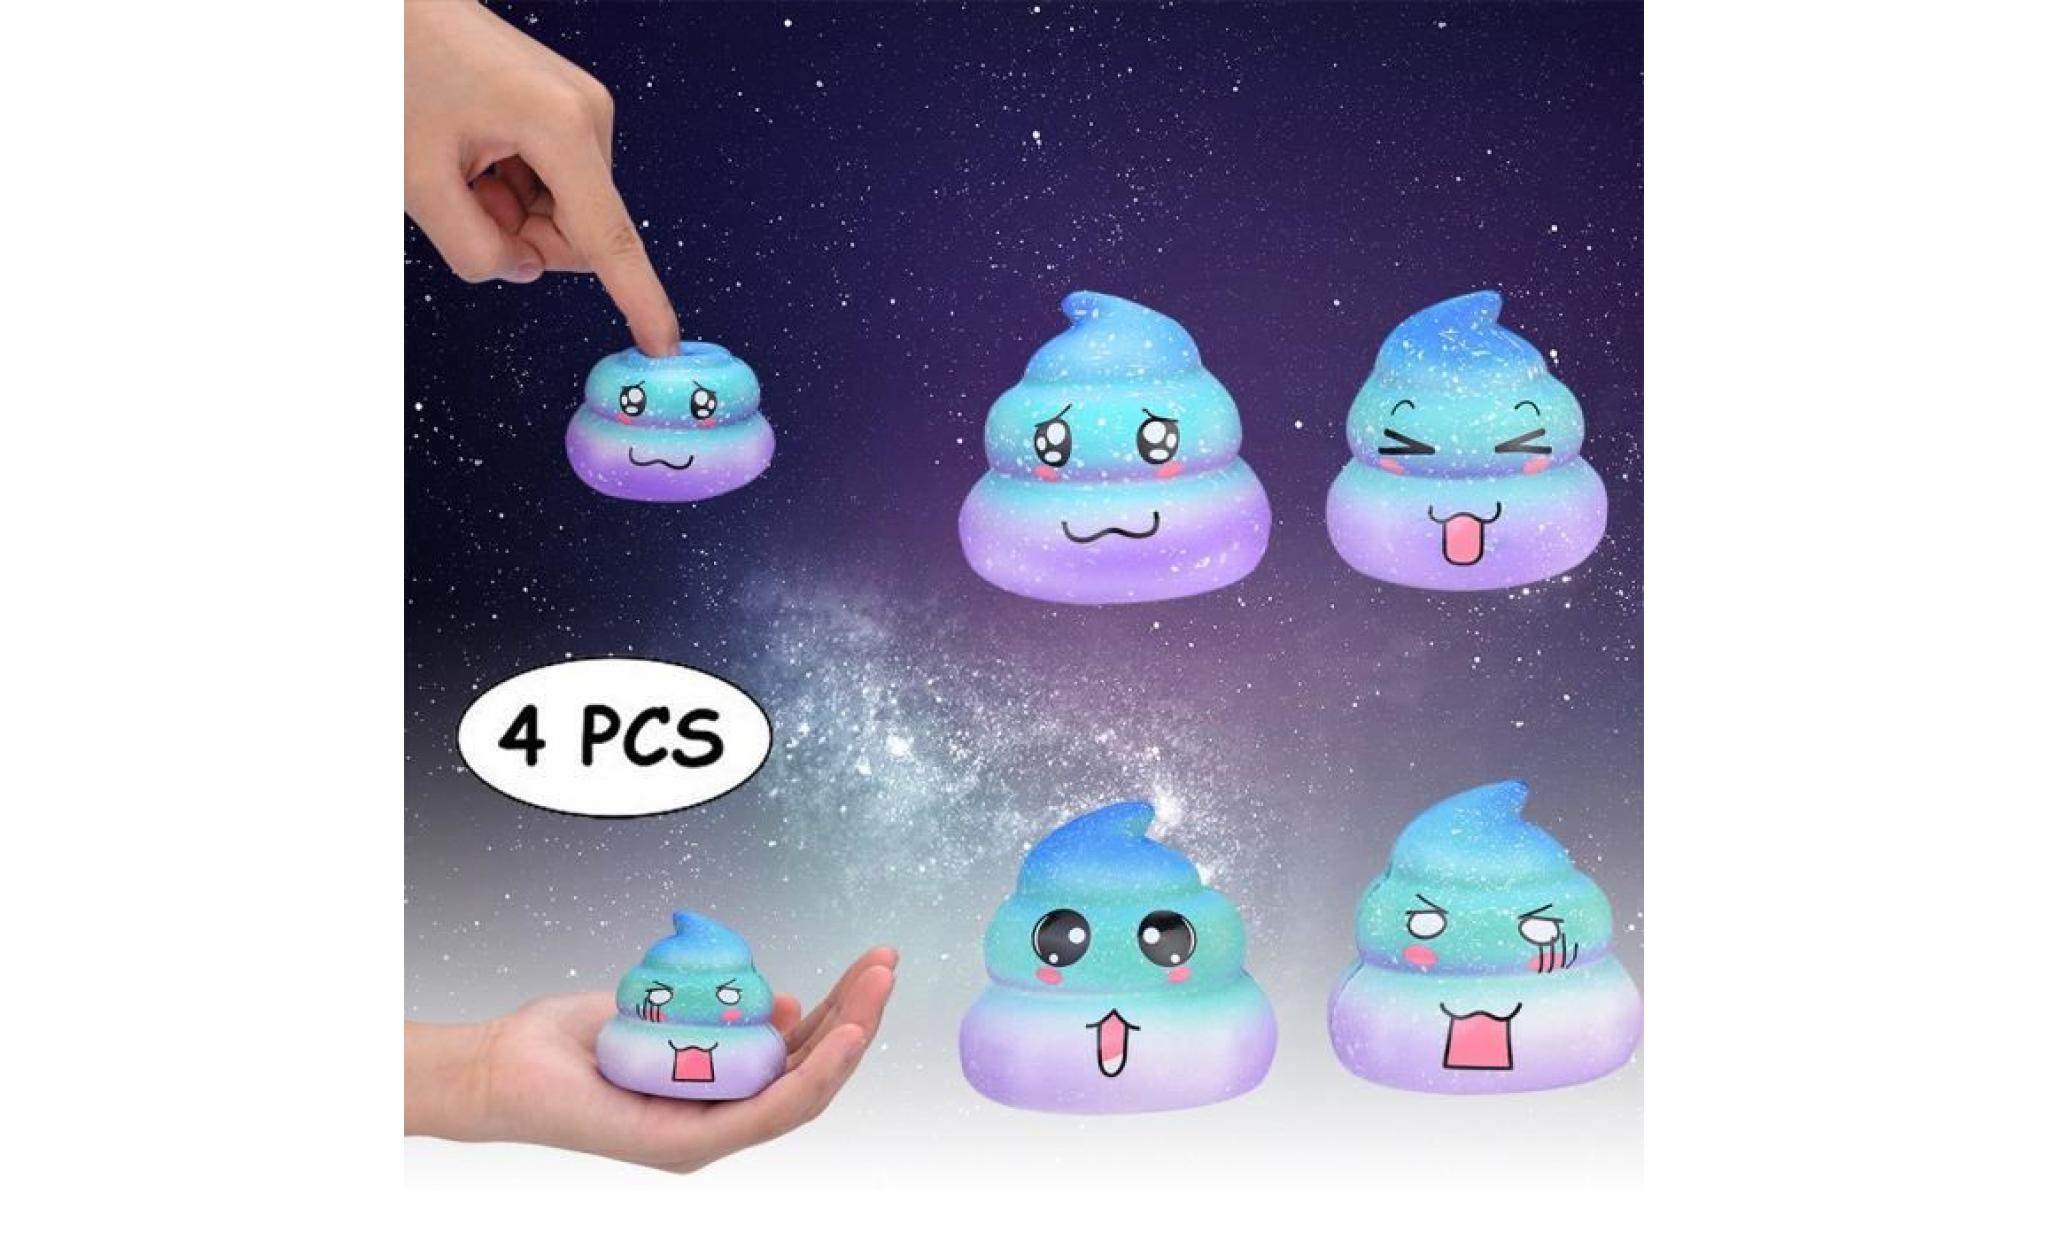 4pcs galaxy poo odeur agréable squishies jouets squeeze lente hausse du stress toys releveur zrj81025102_911